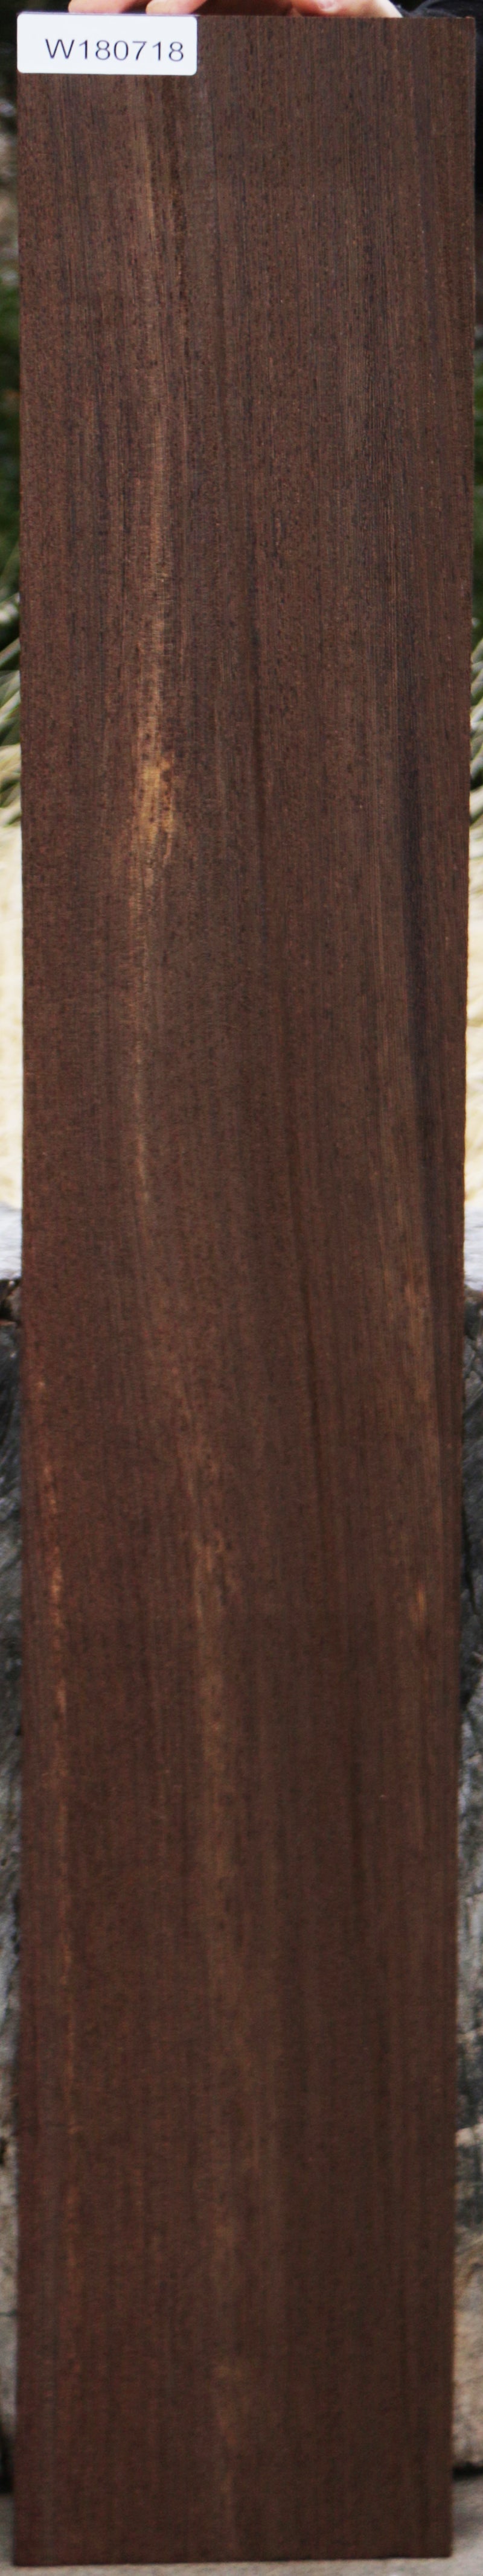 Ribbon Wenge Lumber